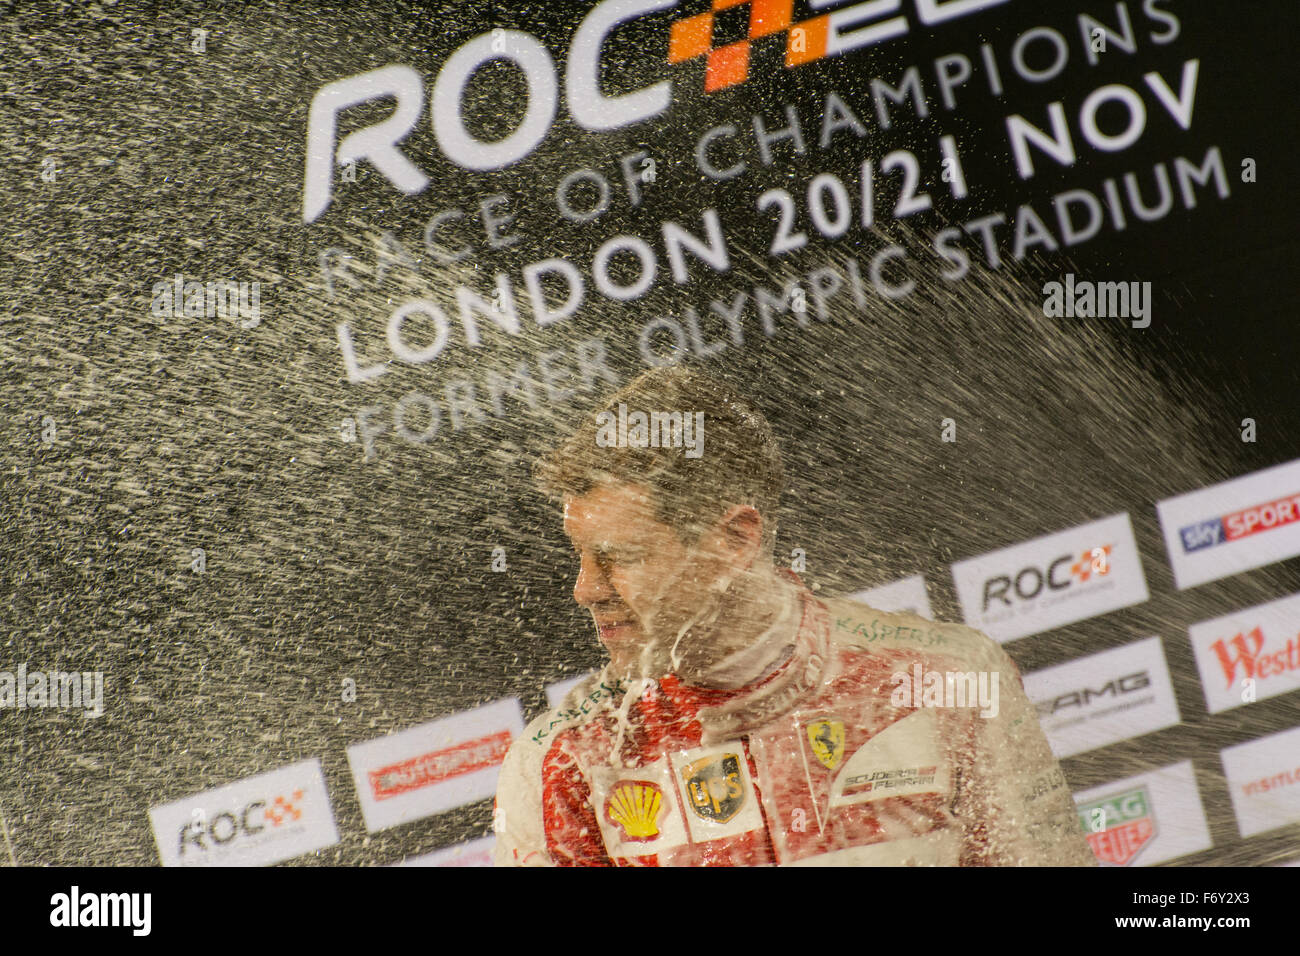 Londres, Royaume-Uni. 21 Nov, 2015. Quatre fois Champion du Monde de Formule 1 Sebastian Vettel de l'Allemagne célèbre après avoir remporté la course des champions dans le stade de la Queen Elizabeth Olympic Park le 21 novembre 2015 à Londres, Royaume-Uni (photo de Gergo Toth Photography / ALAMY Live News) Banque D'Images